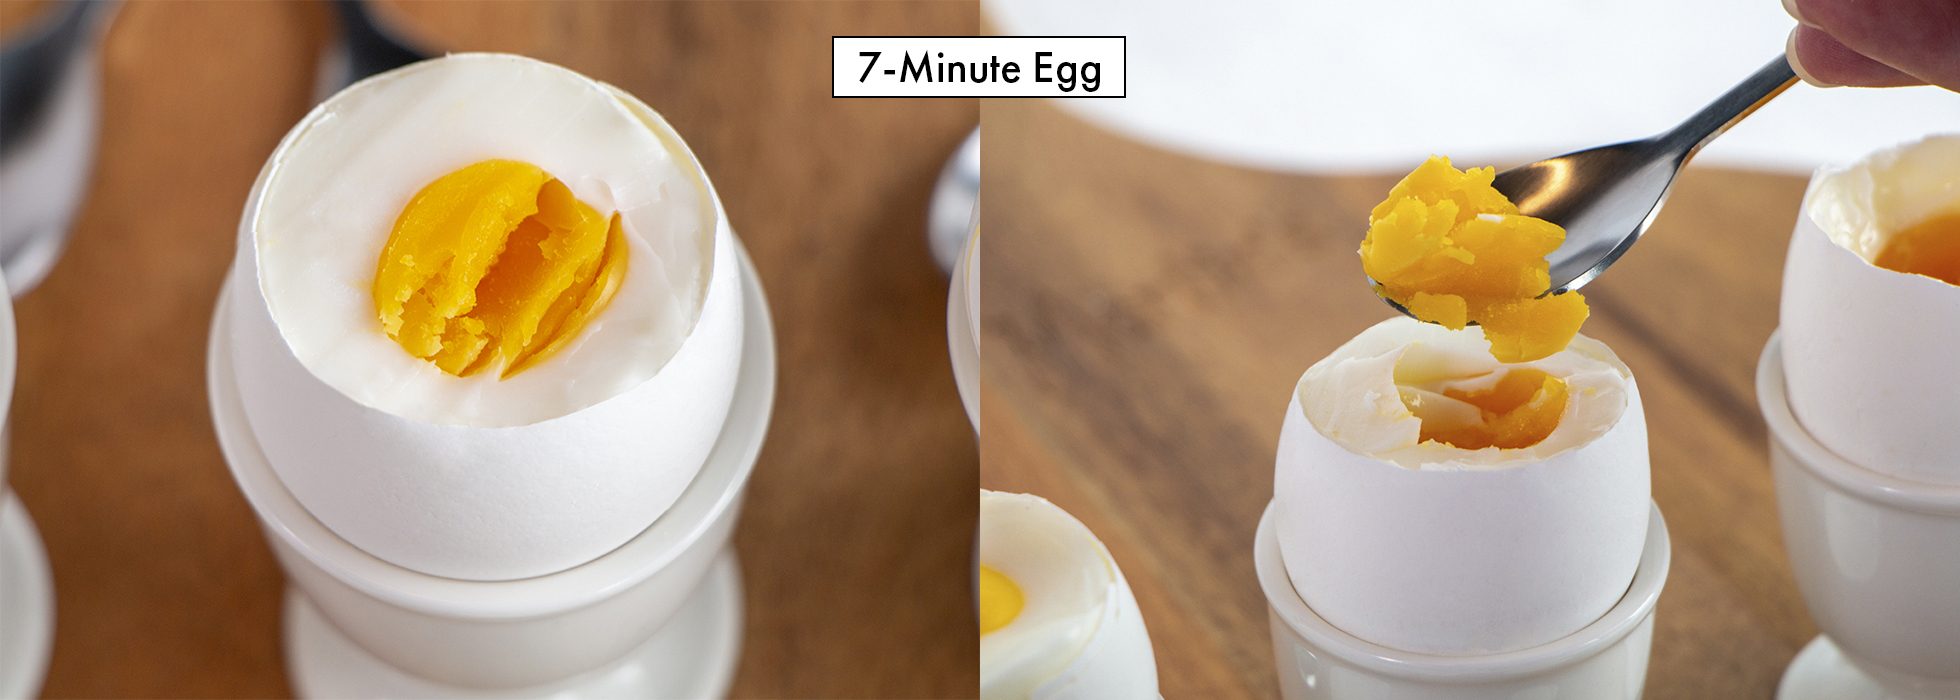 7-Minute Egg